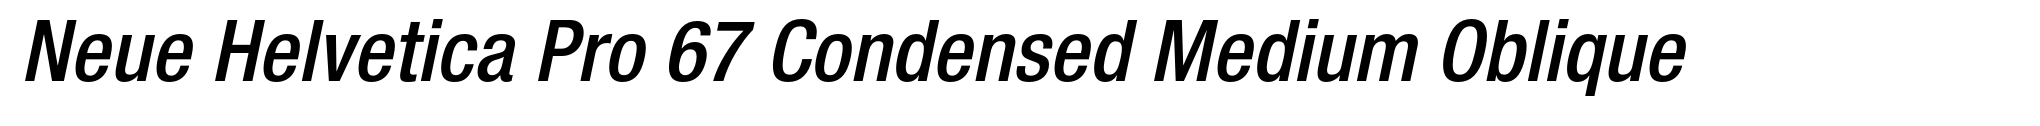 Neue Helvetica Pro 67 Condensed Medium Oblique image